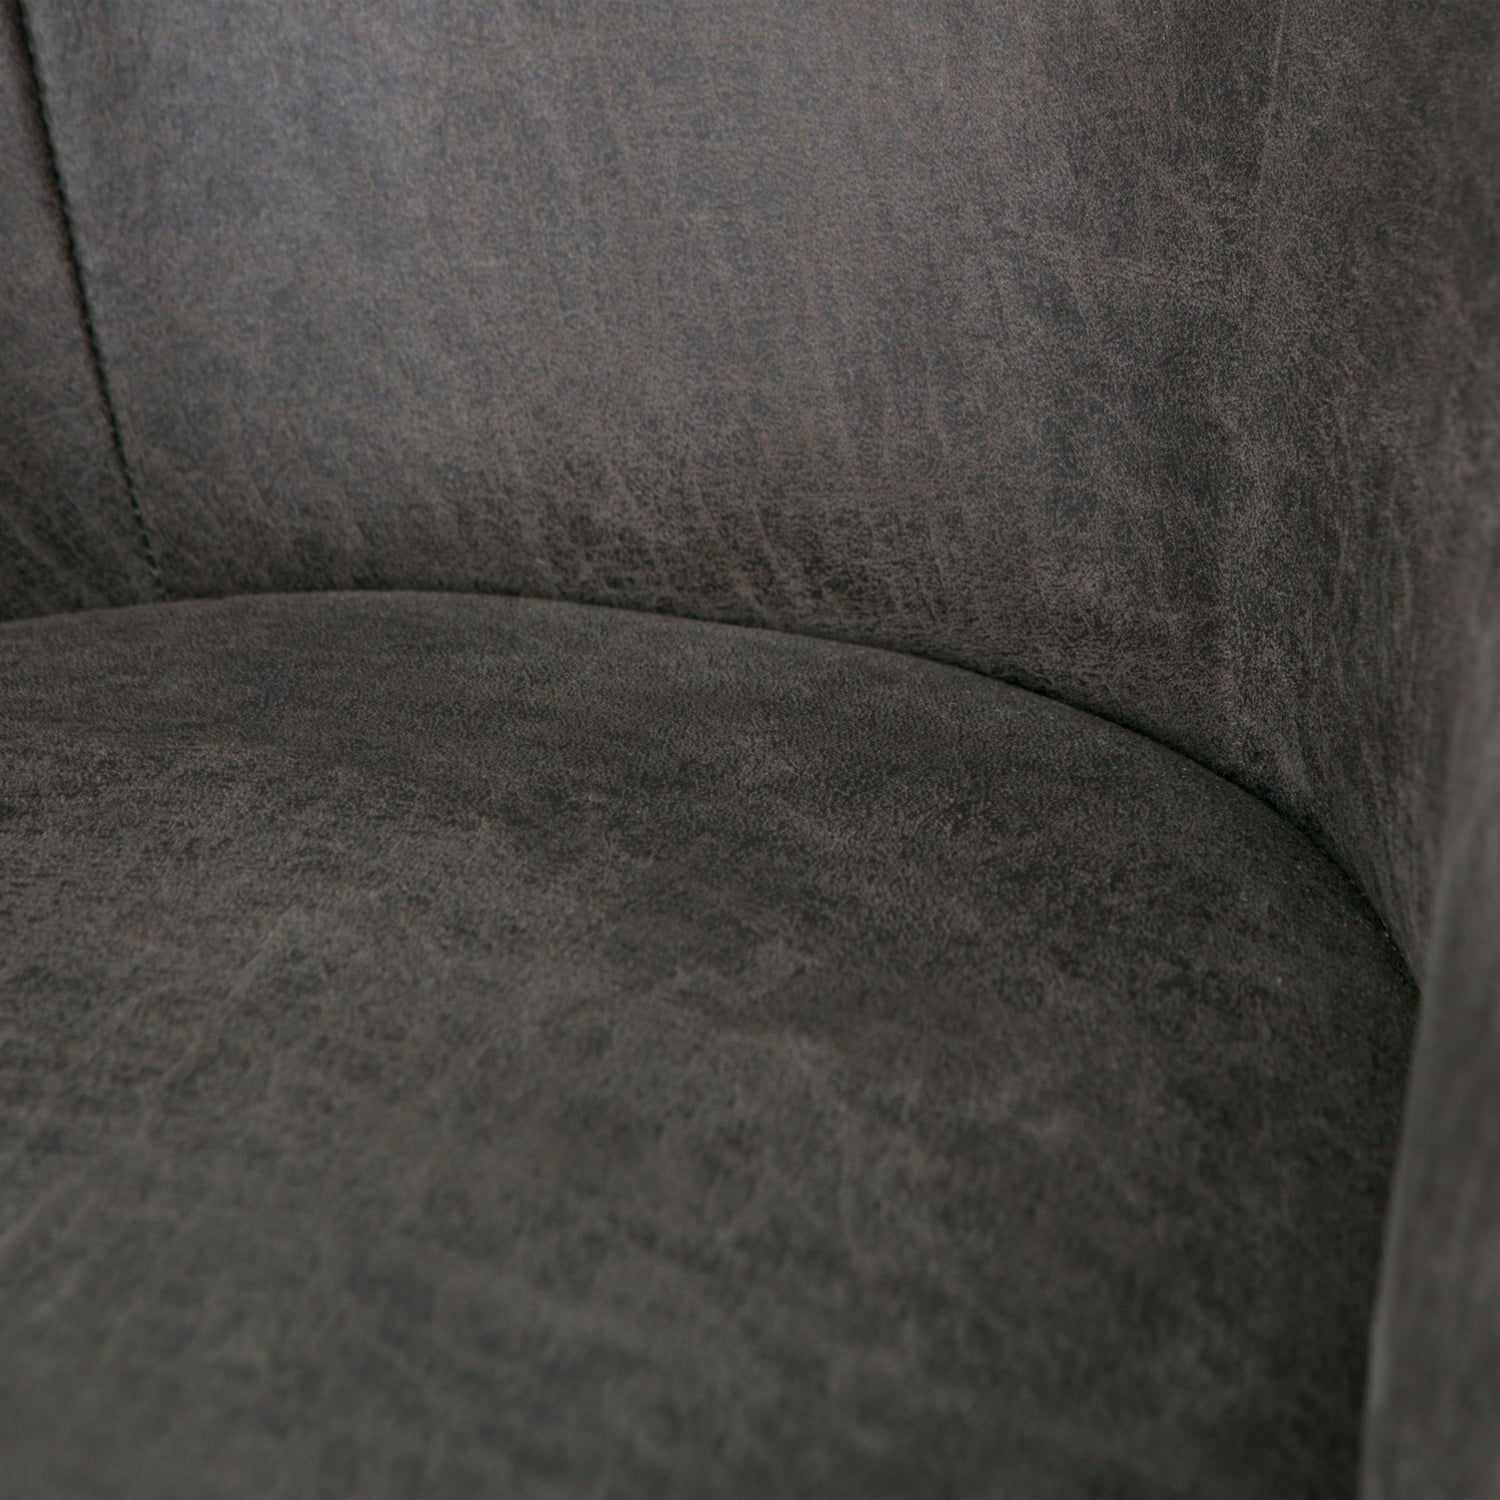 800748-01-02_VS_BP_Vogue_fauteuil_leer_zwart_detail.jpg?auto=webp&format=png&width=2000&height=2000